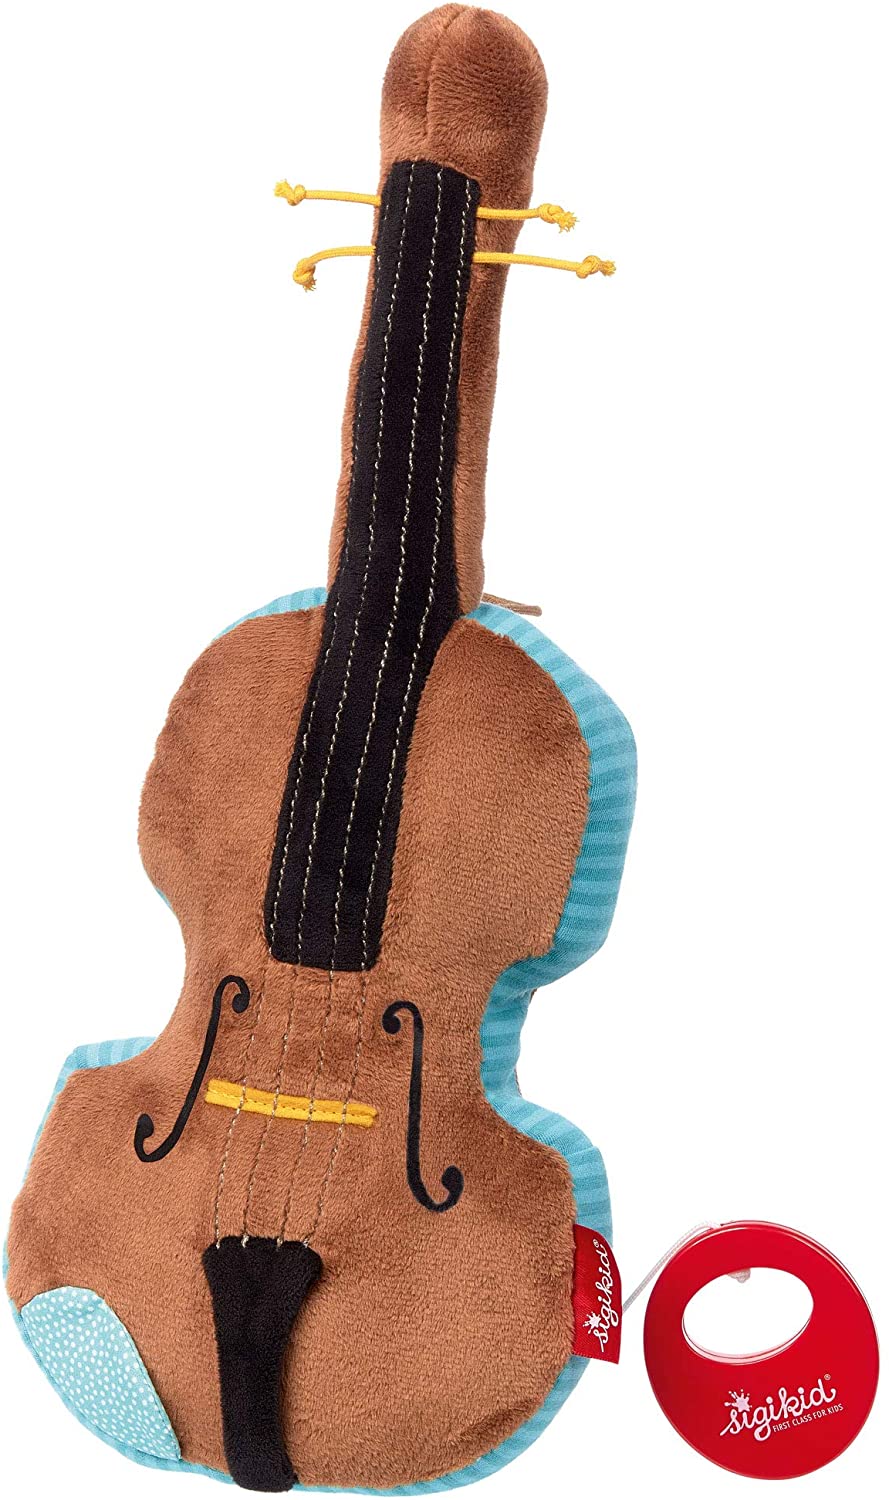 Carrillon “Violino”